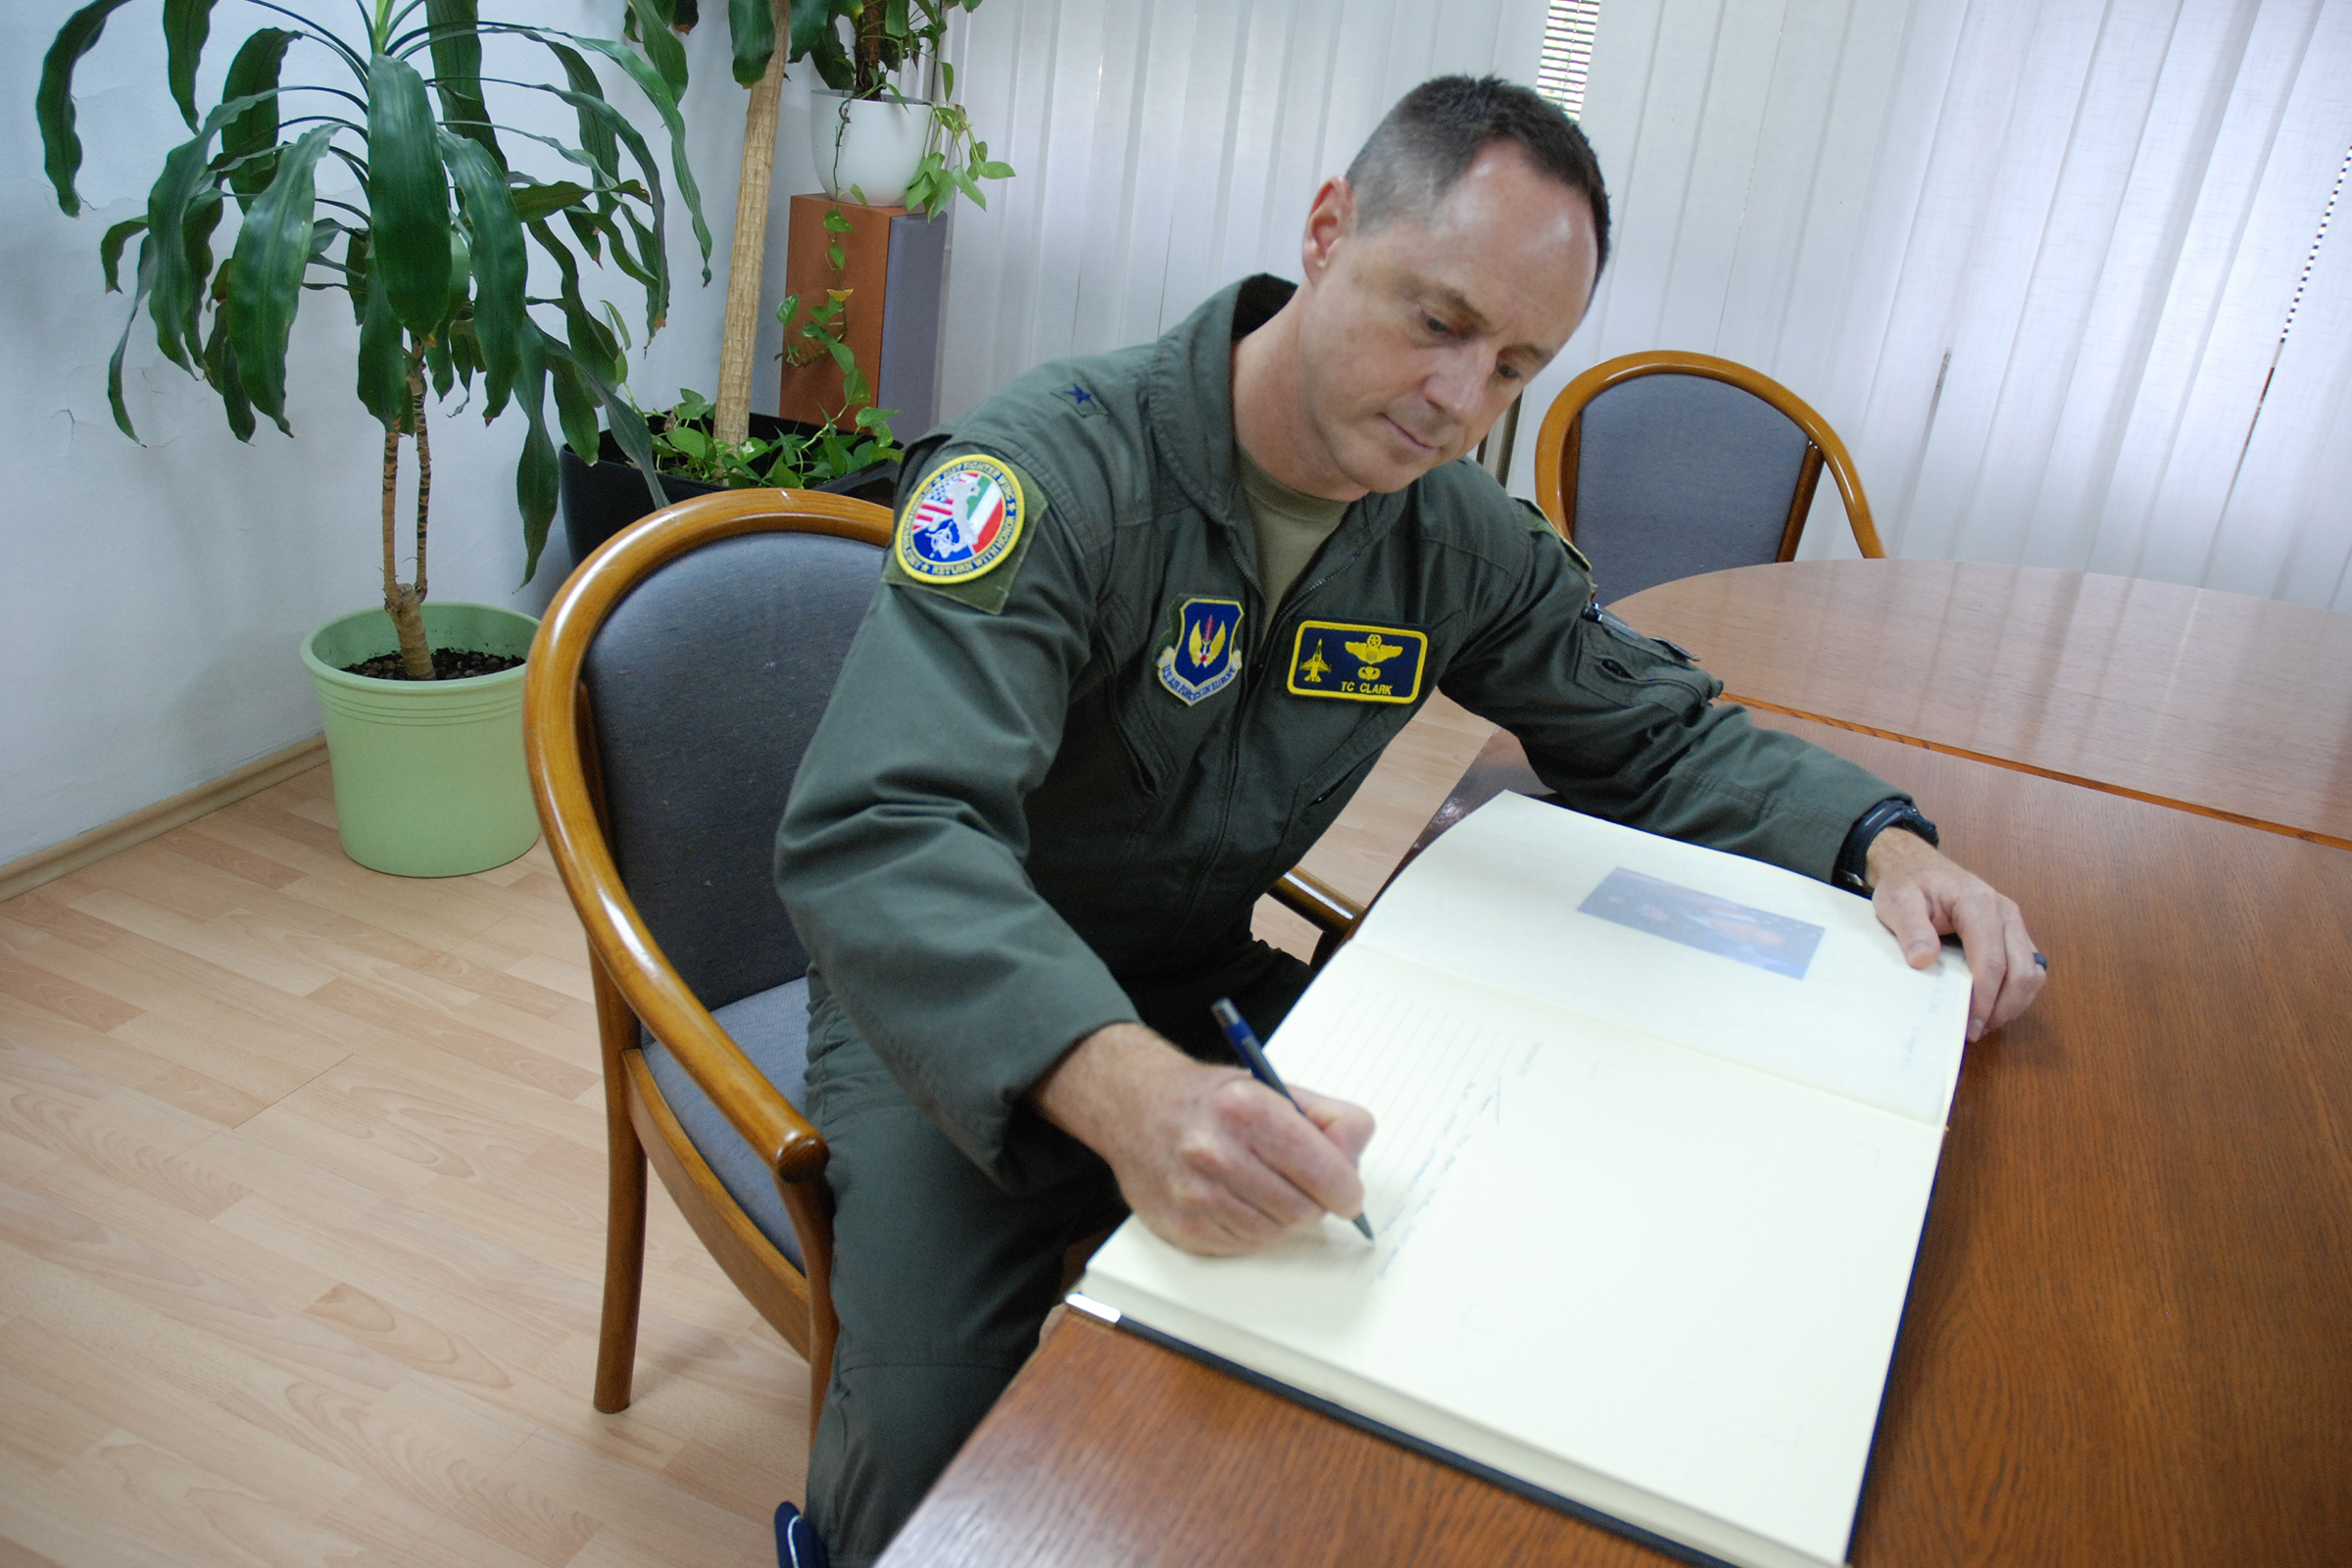 Zapovjednik 31. krila zrakoplovne baze Aviano brigadni general Tad D. Clark u službenoj posjeti HRZ-u